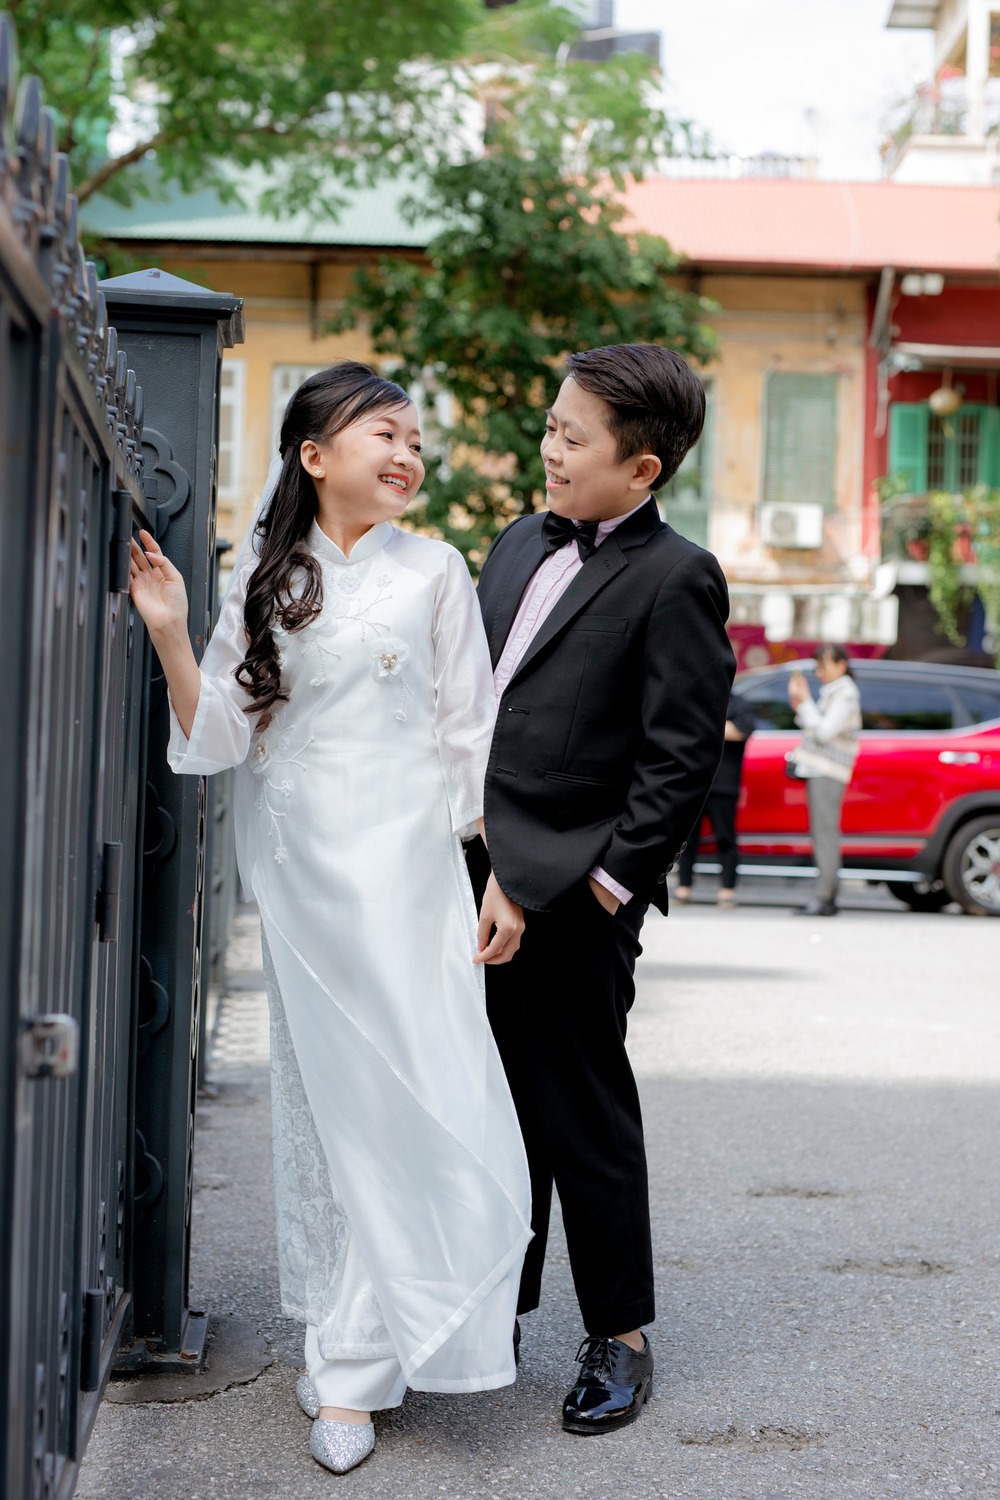 Đôi vợ chồng tí hon vừa làm đám cưới tại Nghệ An: Nhiều lúc đi đường hay bị nhầm là chị em - Ảnh 10.